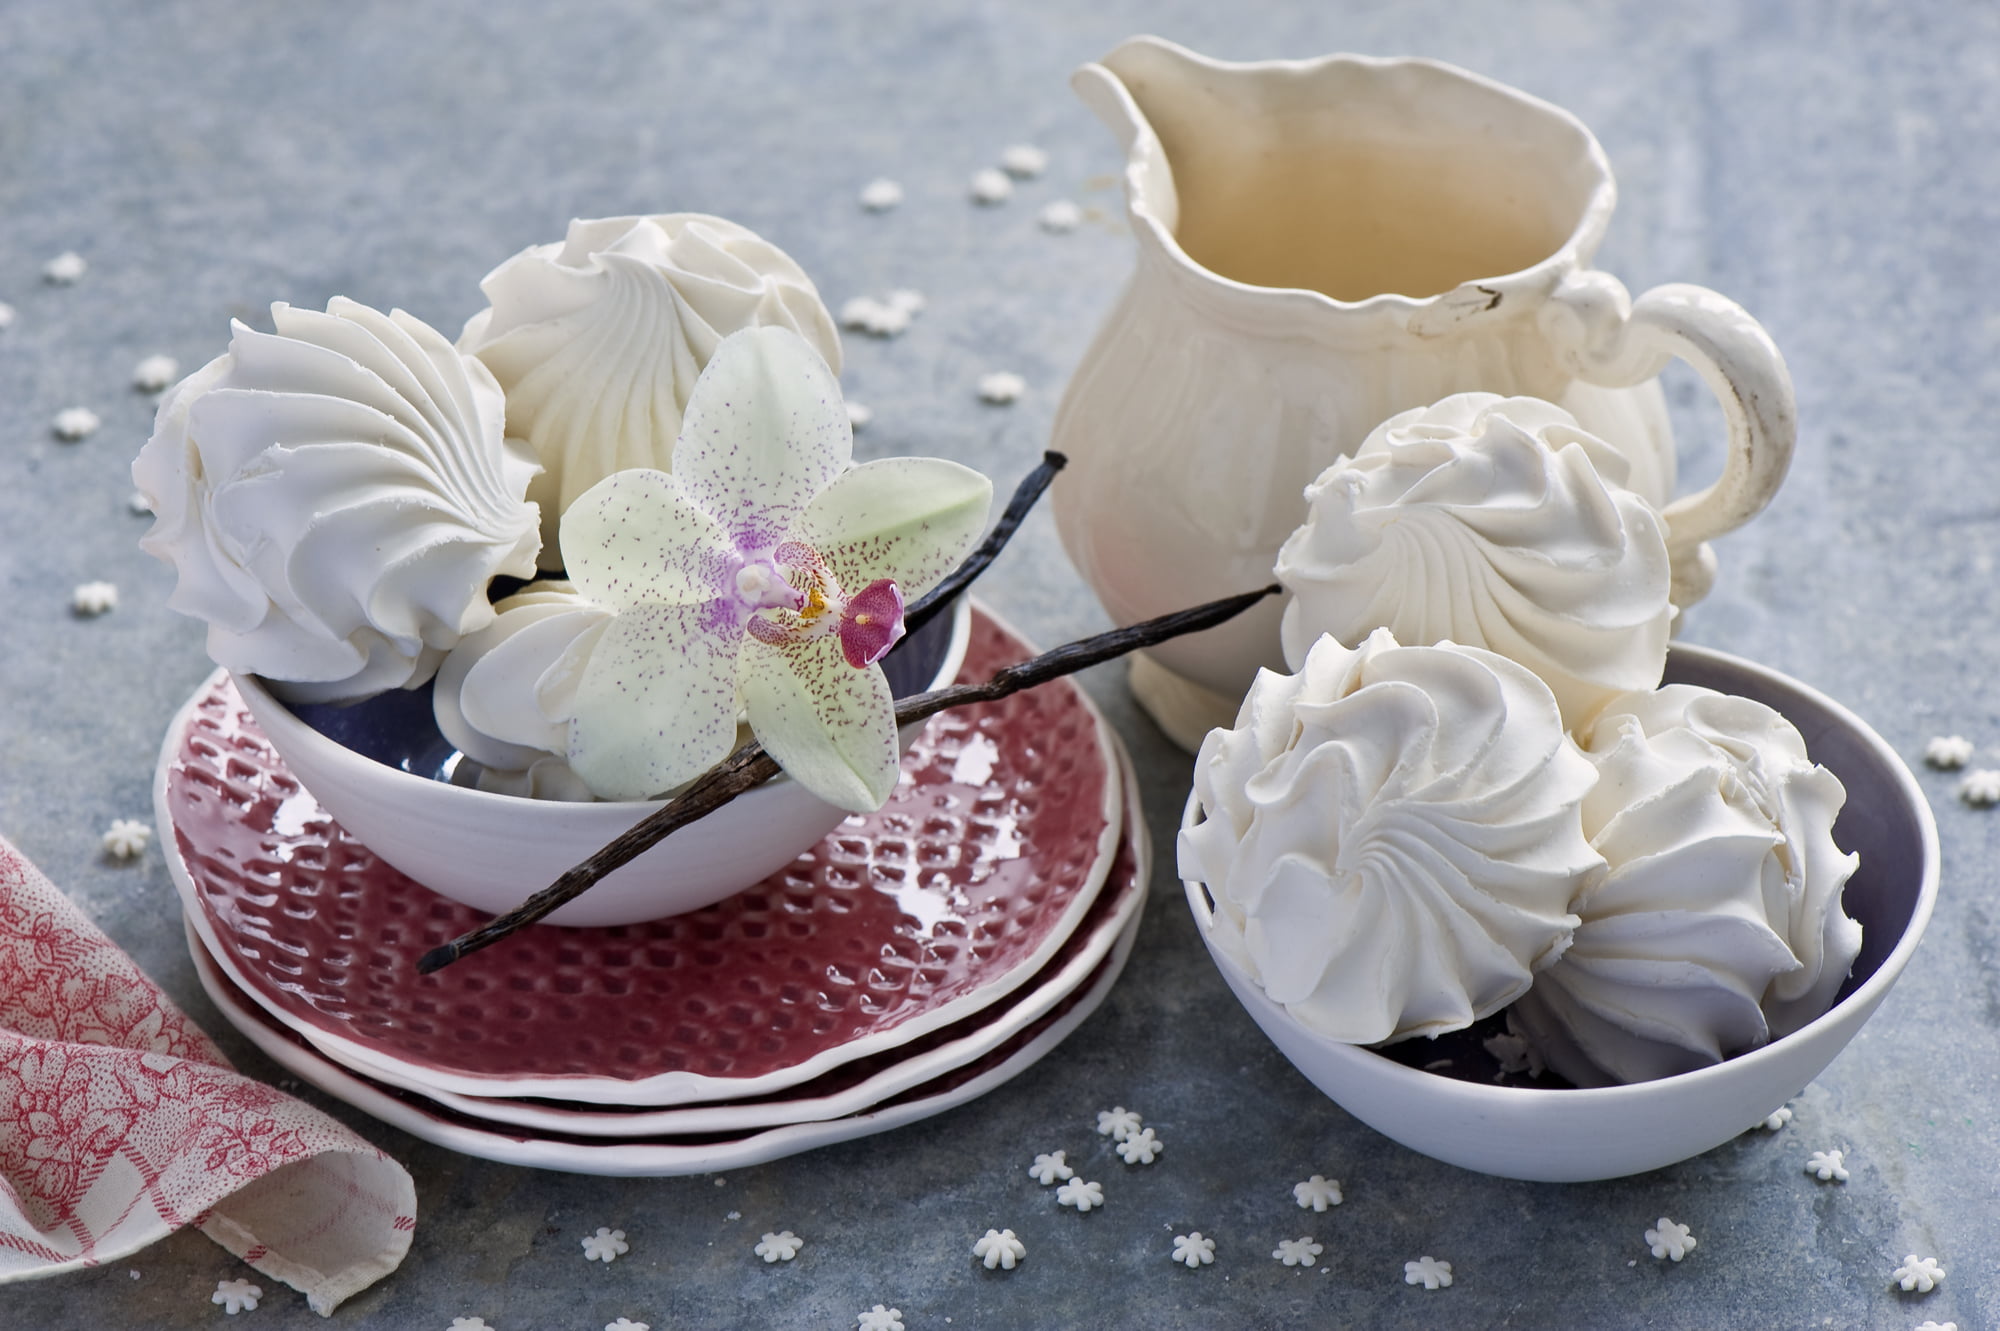 several white pastries on white ceramic bowls near white pitcher